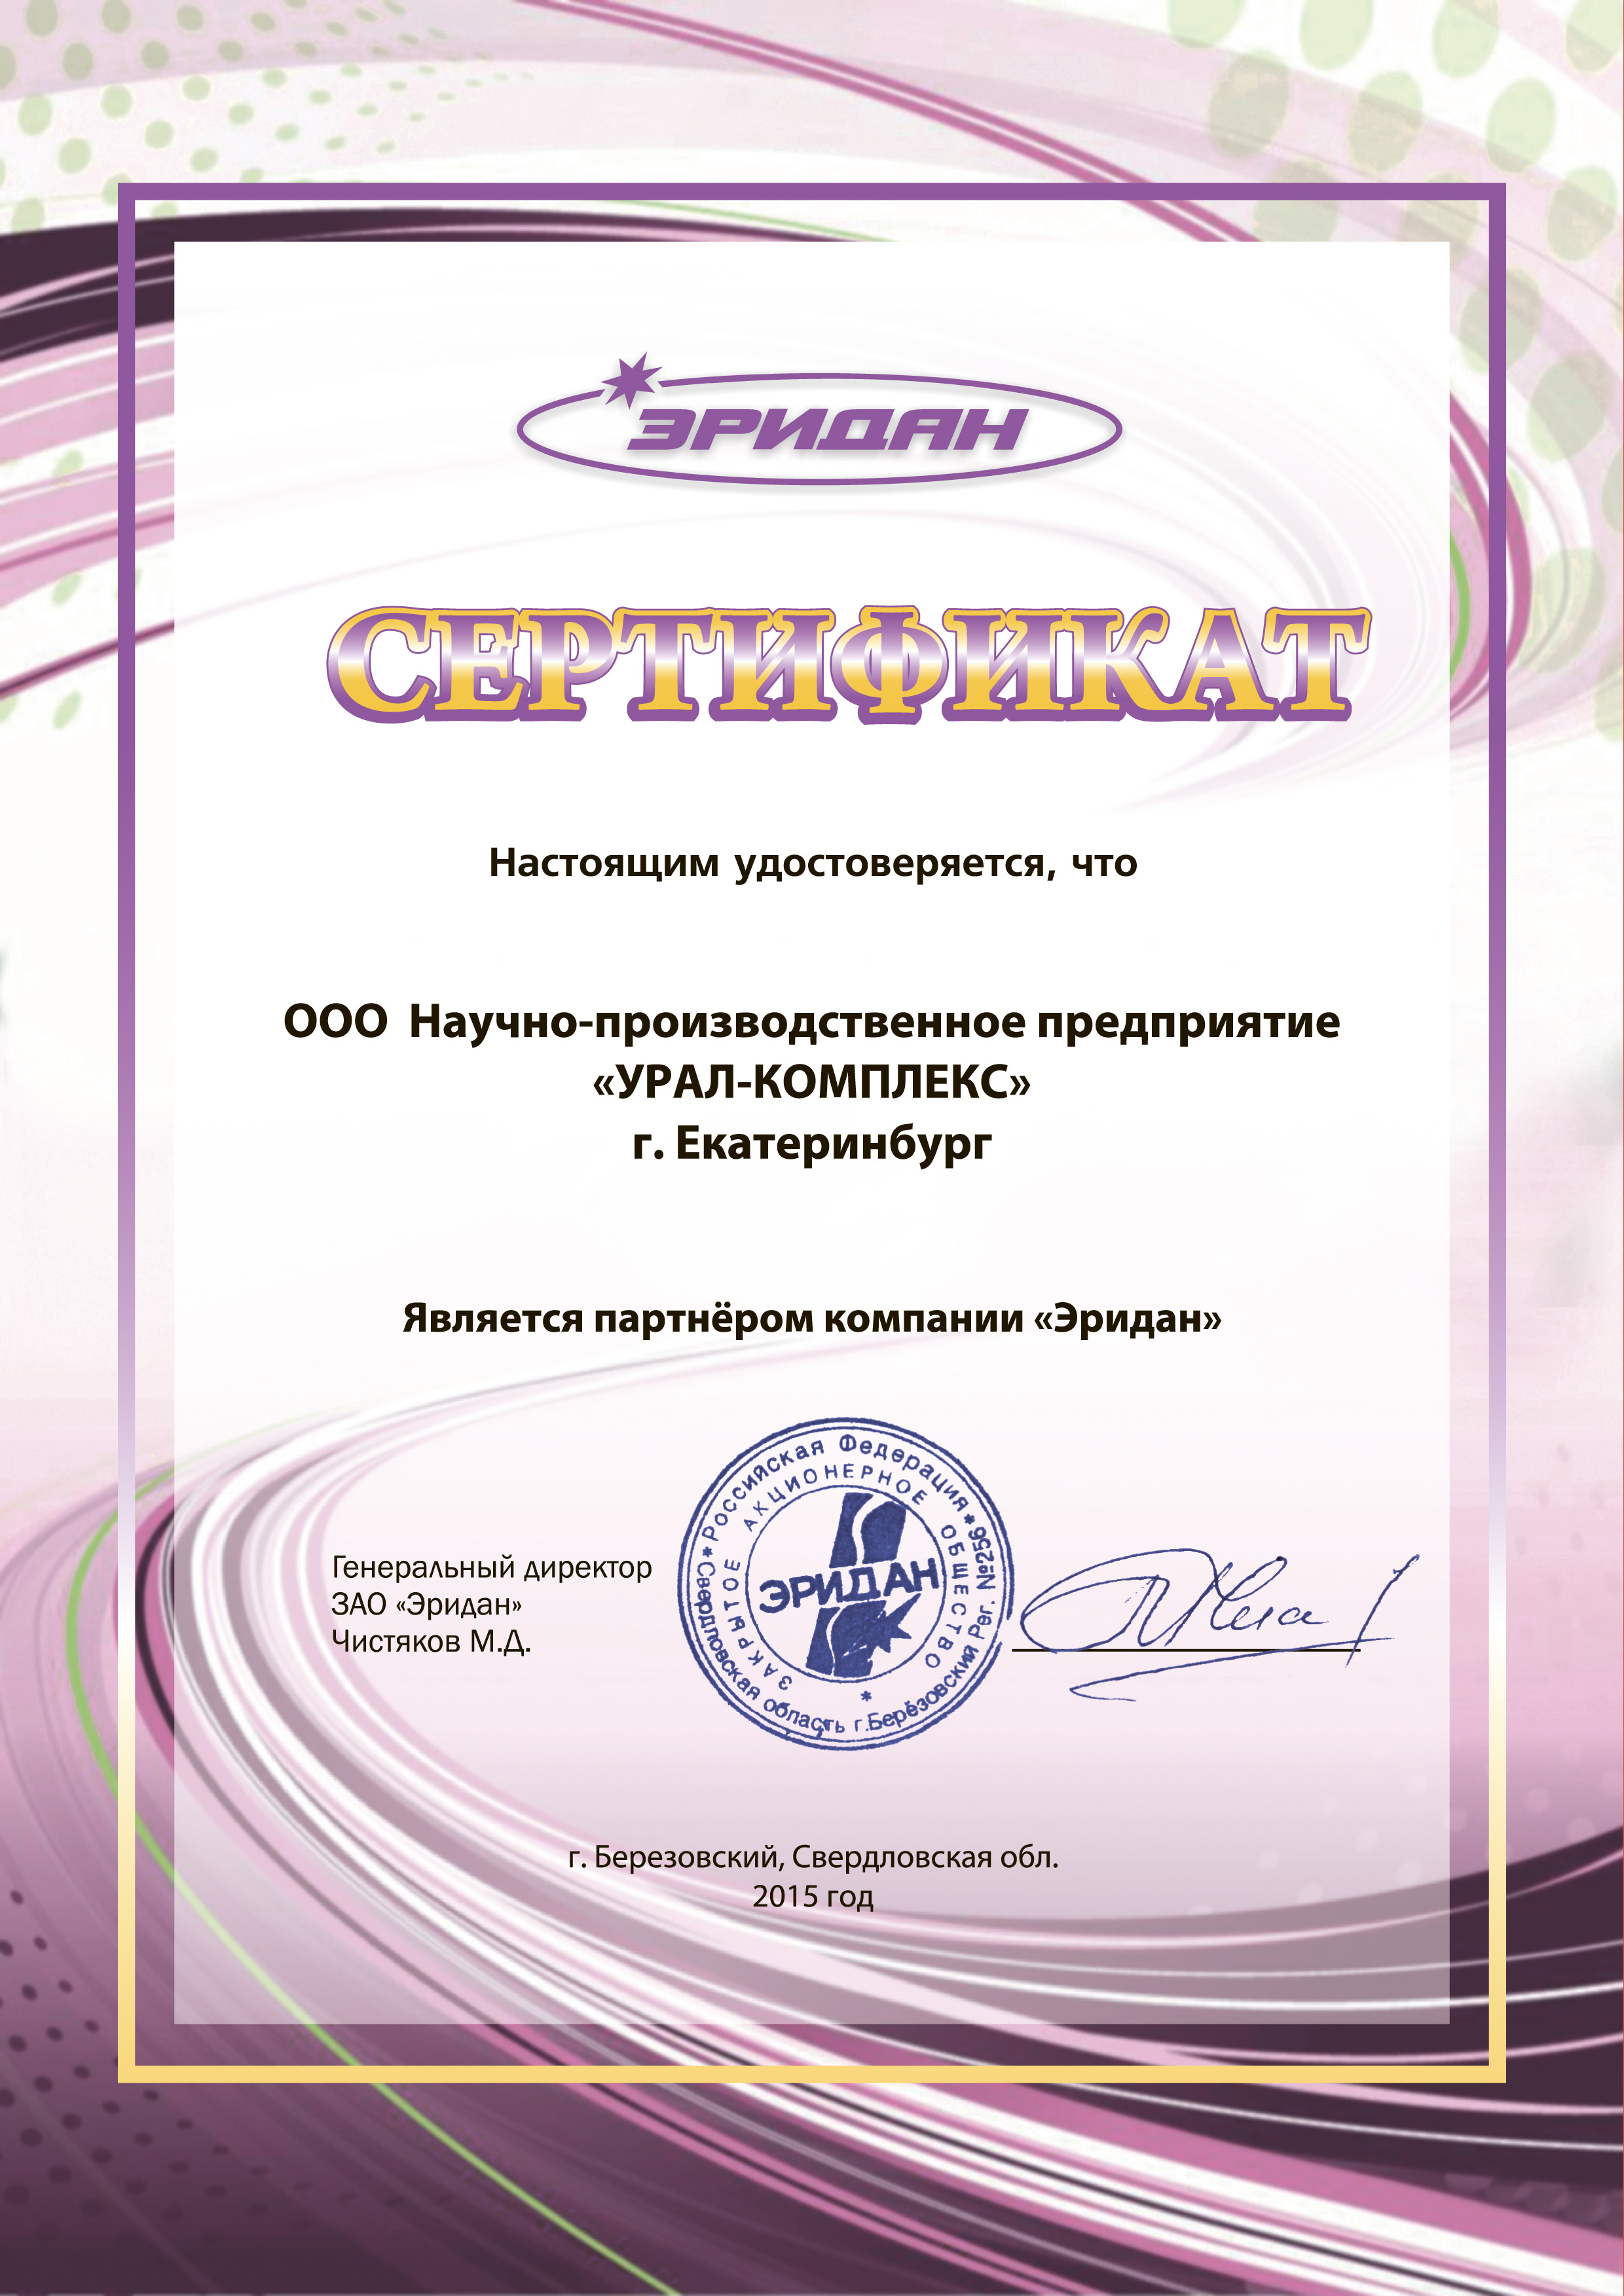 Сертификат ЗАО "Эридан"